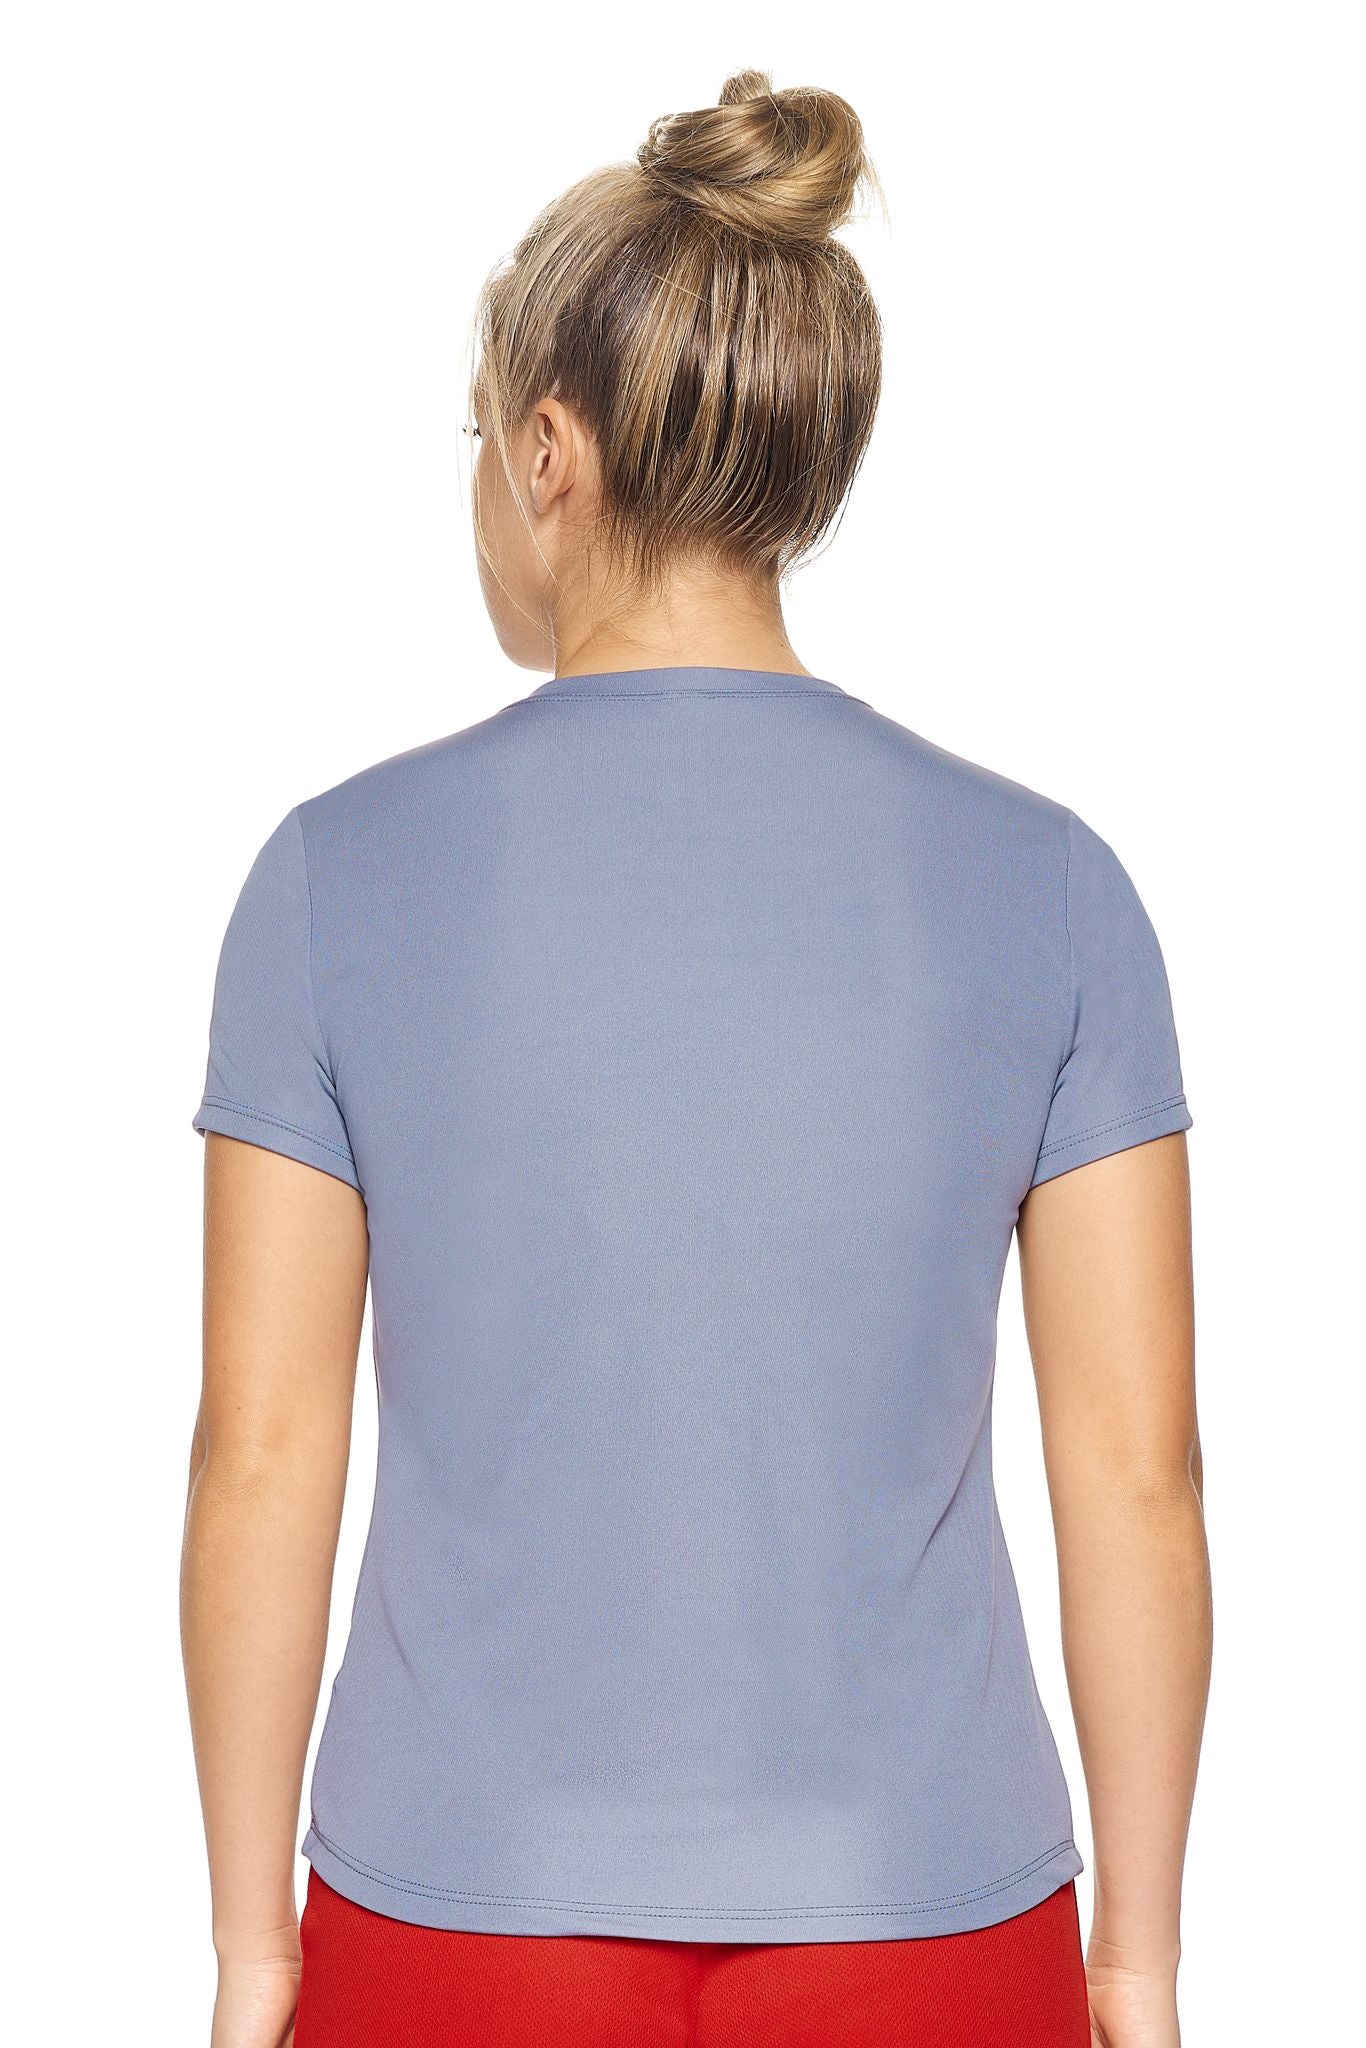 Expert Brand Retail Women's Pk MaX™ Crewneck Expert Tec Tee T-shirt steel gray 3#color_steel